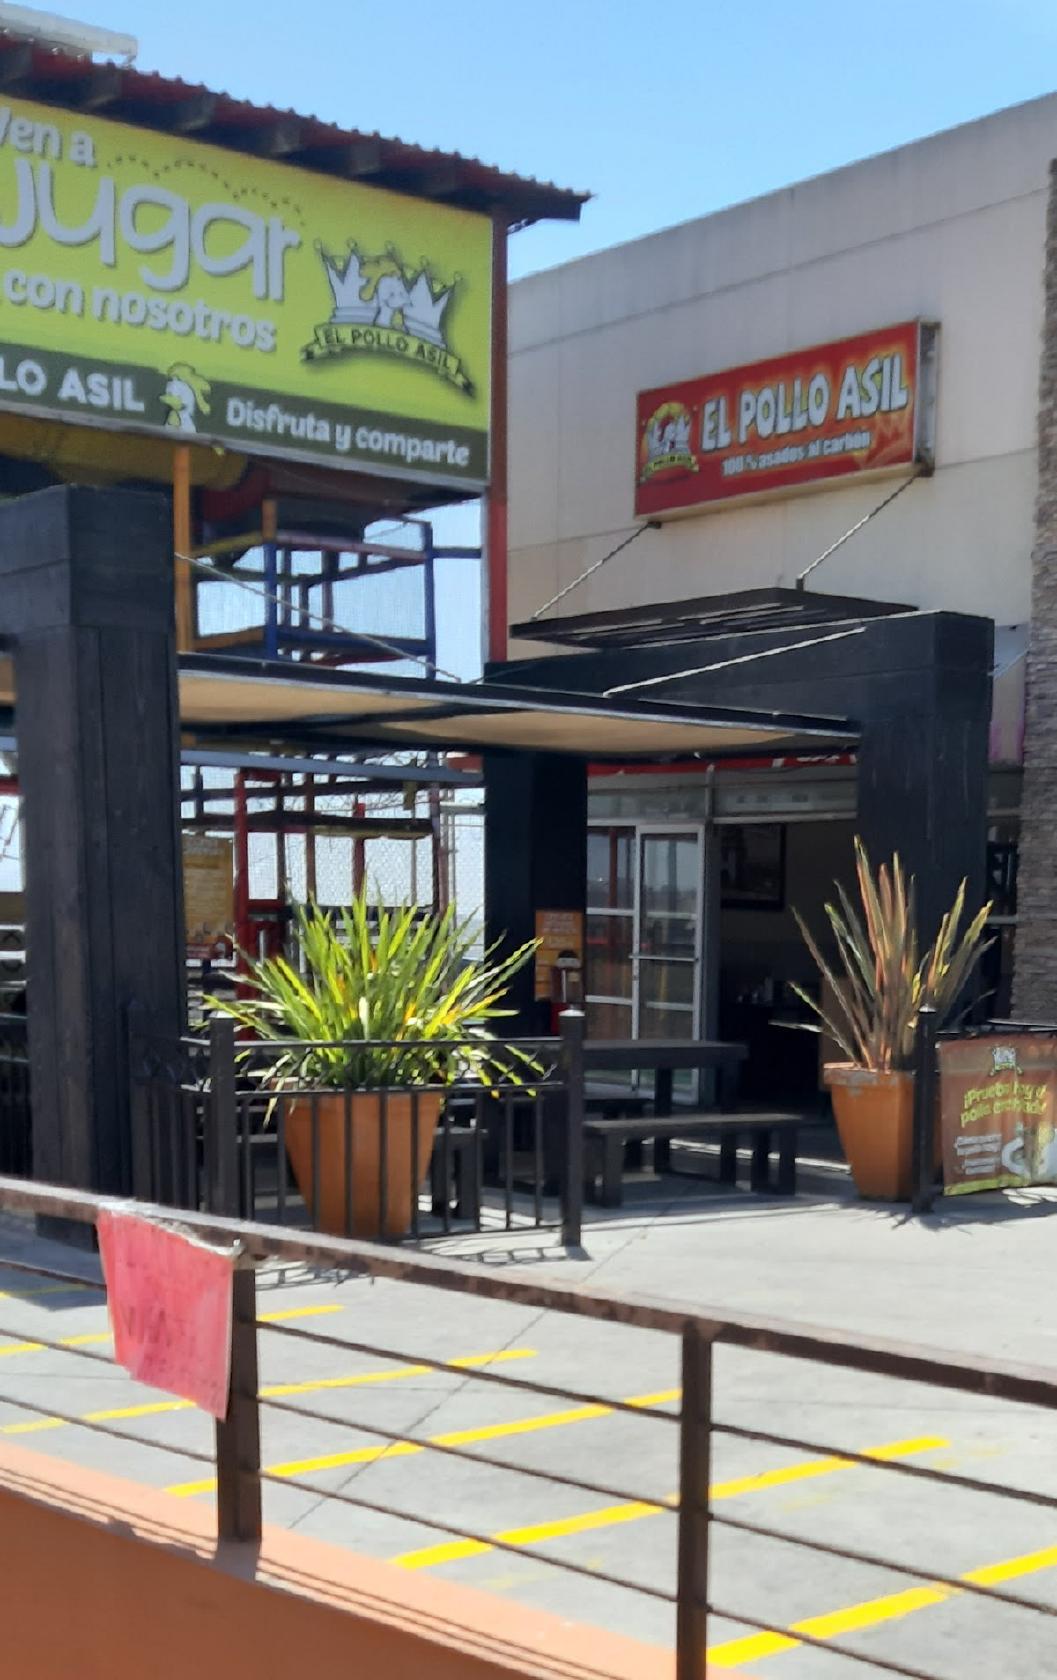 Restaurante El Pollo asil Santa fe, Tijuana, Boulevard Santa Fe 10201 -  Opiniones del restaurante